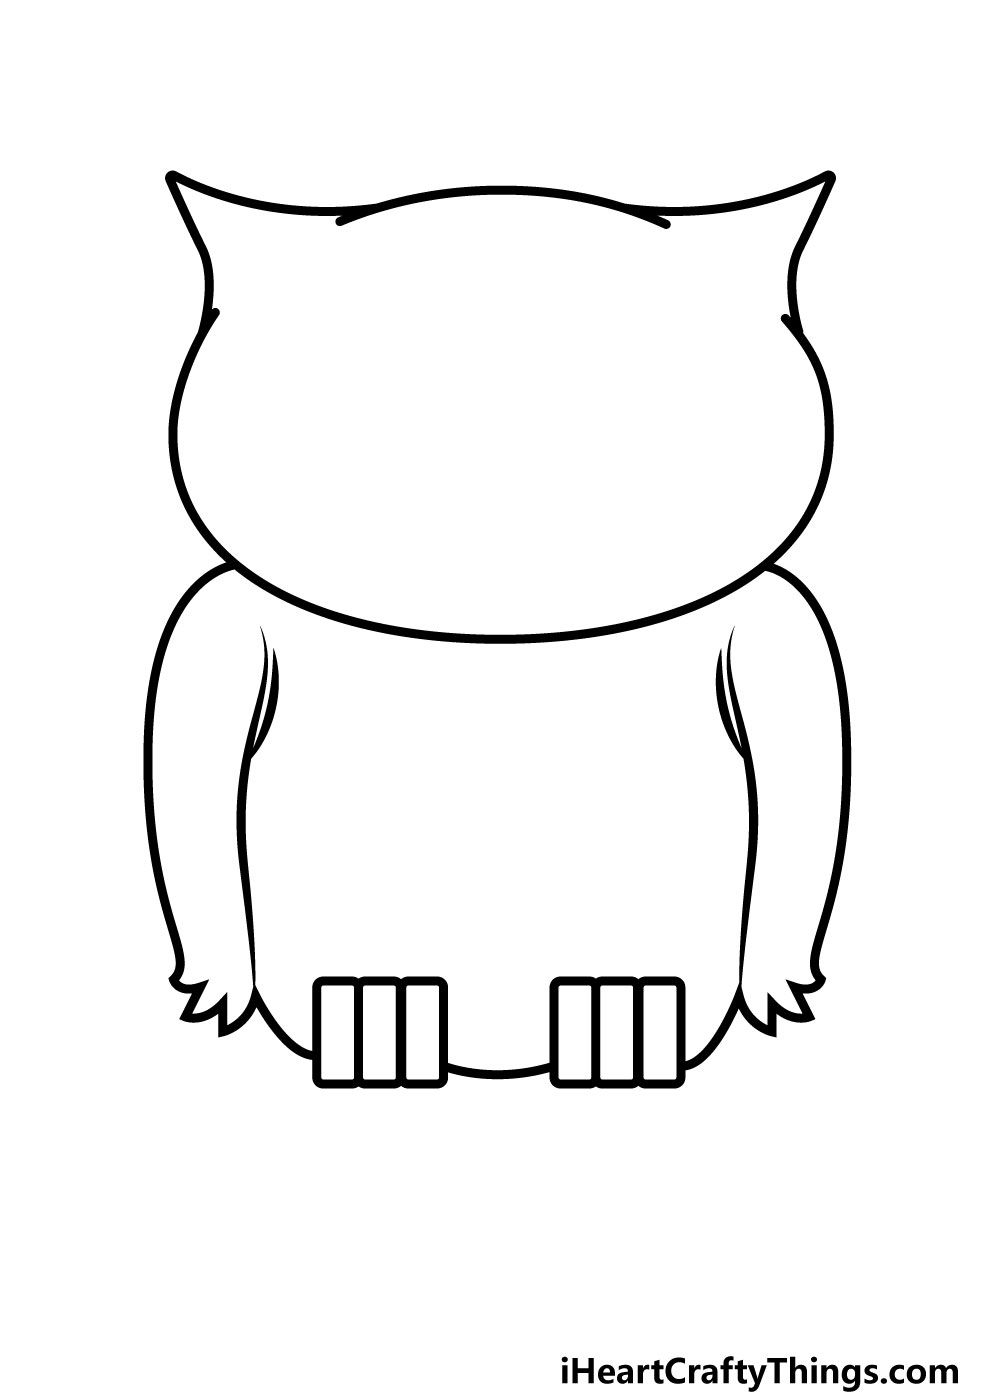 Drawing Owl Step 6 - Hướng dẫn chi tiết cách vẽ cú mèo đơn giản gồm 9 bước cơ bản